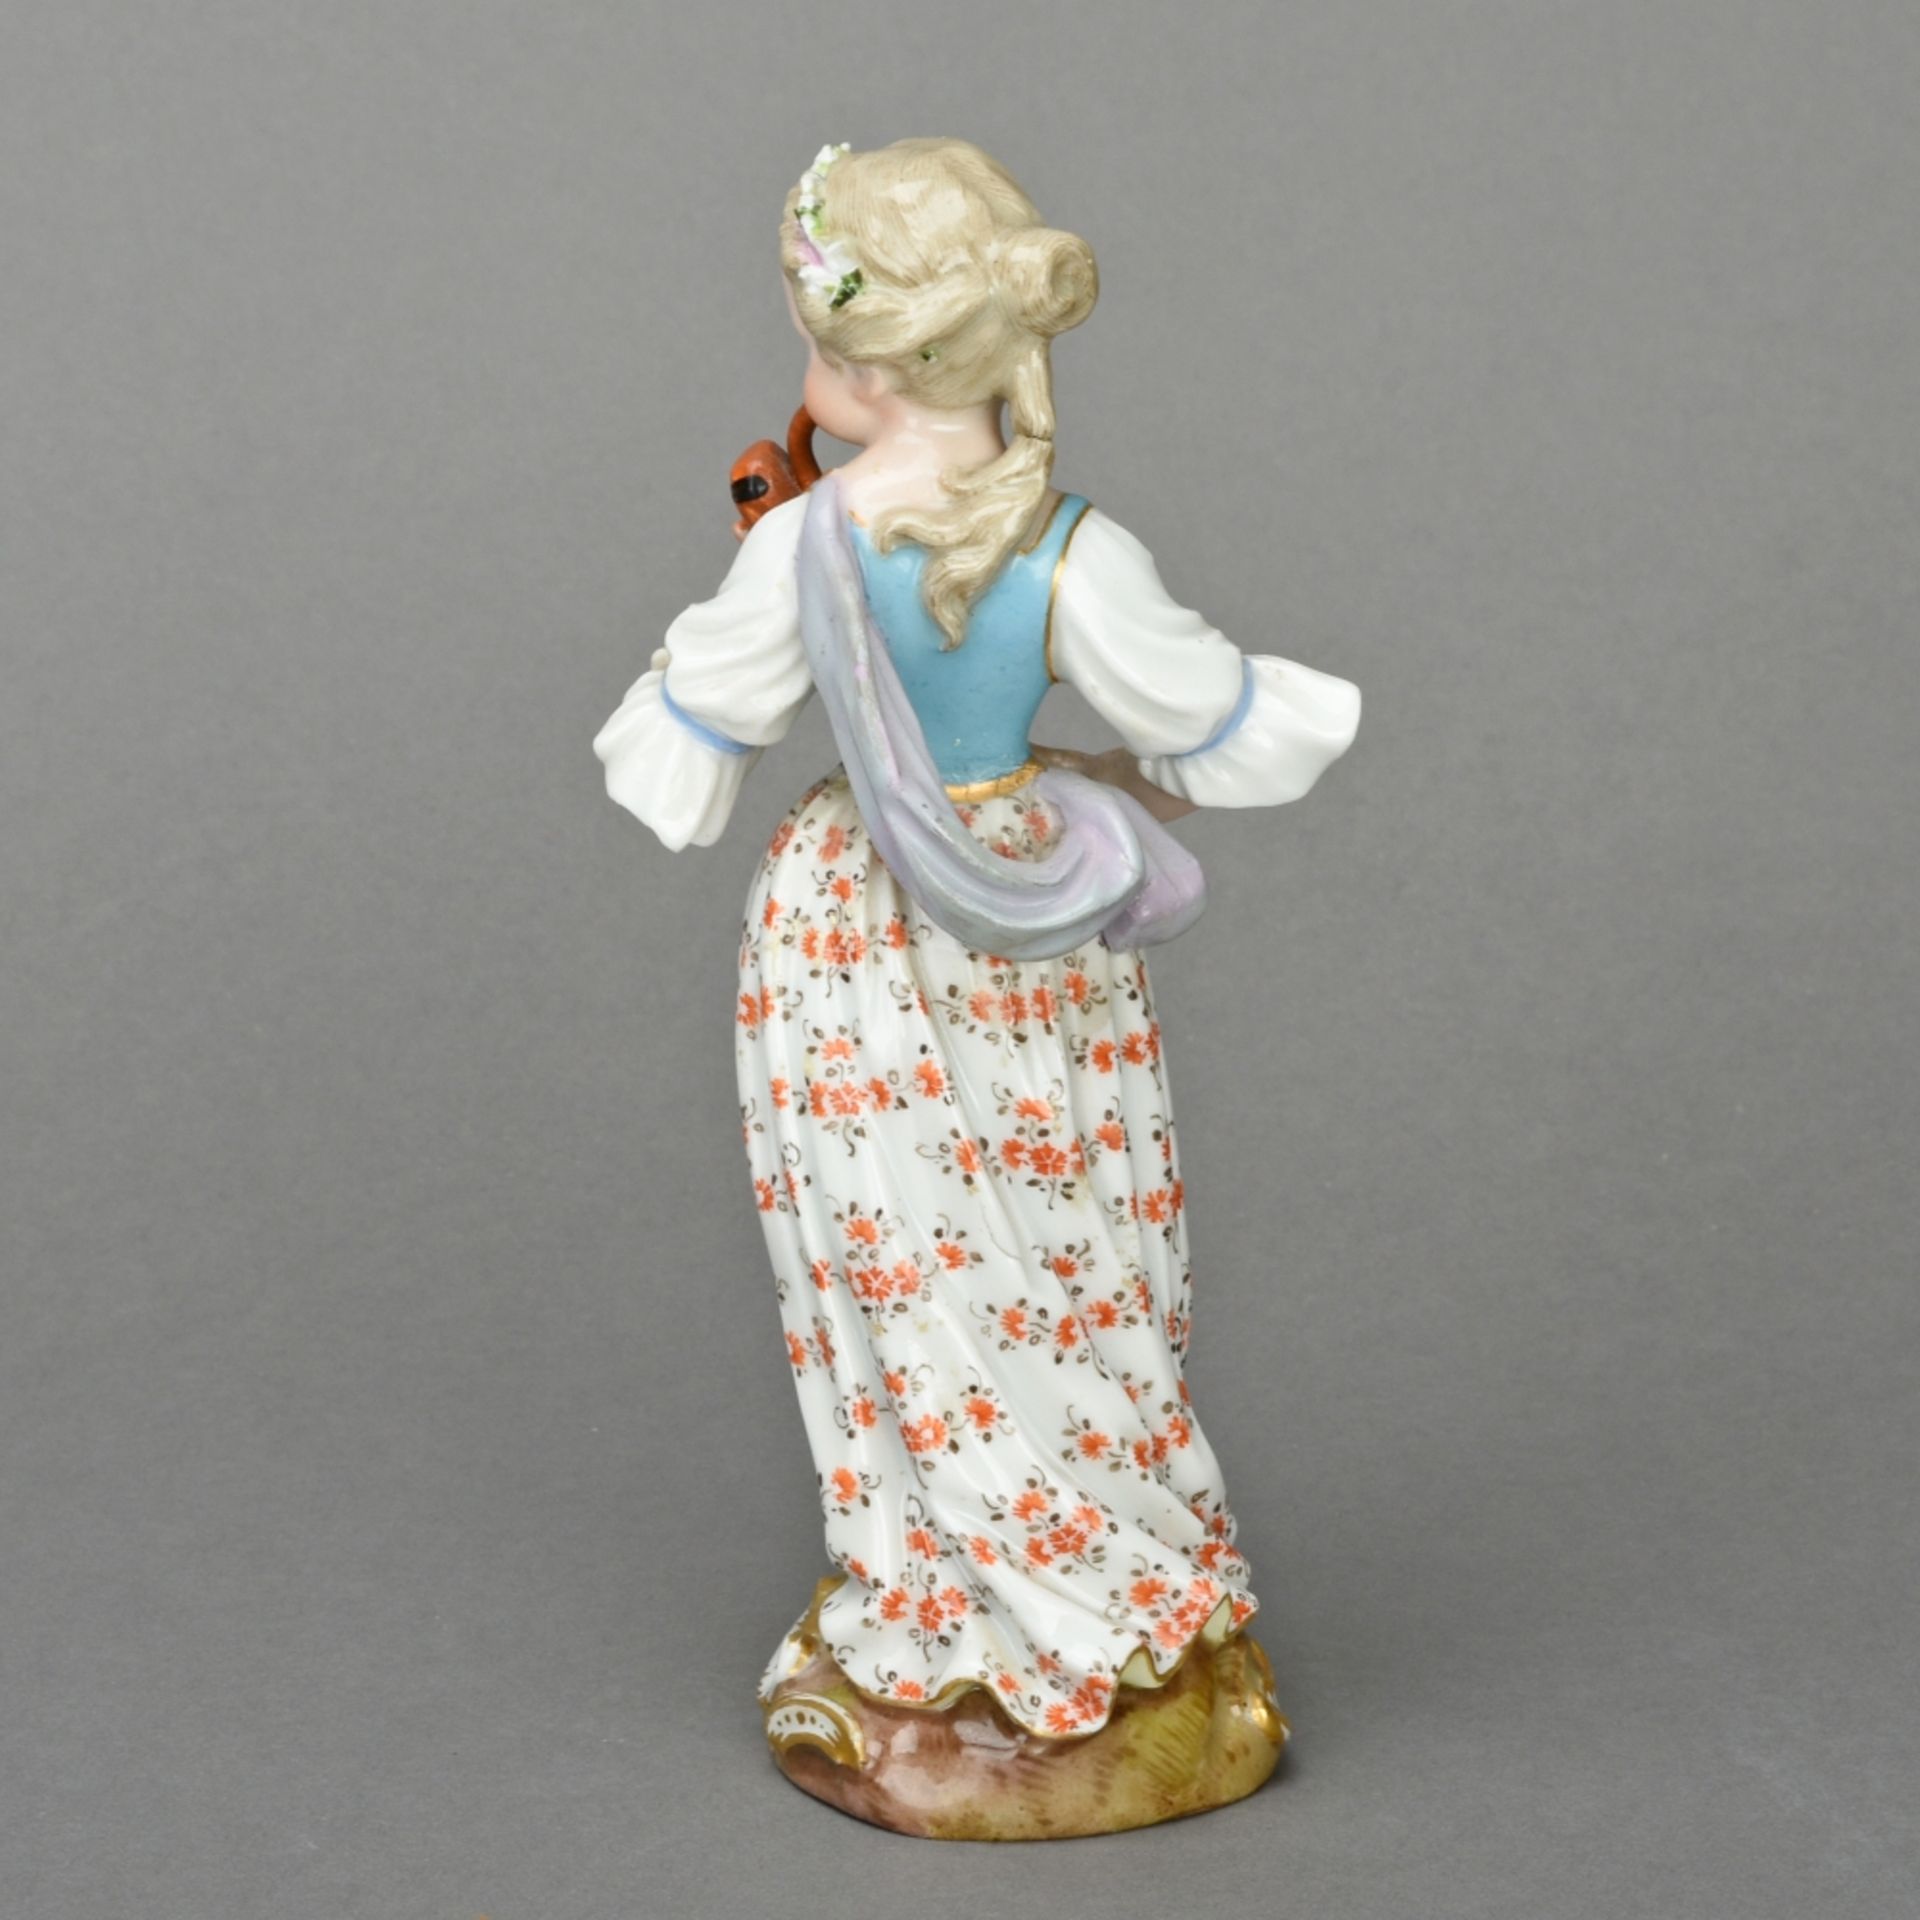 Fagottspielerin aus der Mädchenkapelle - Image 3 of 5